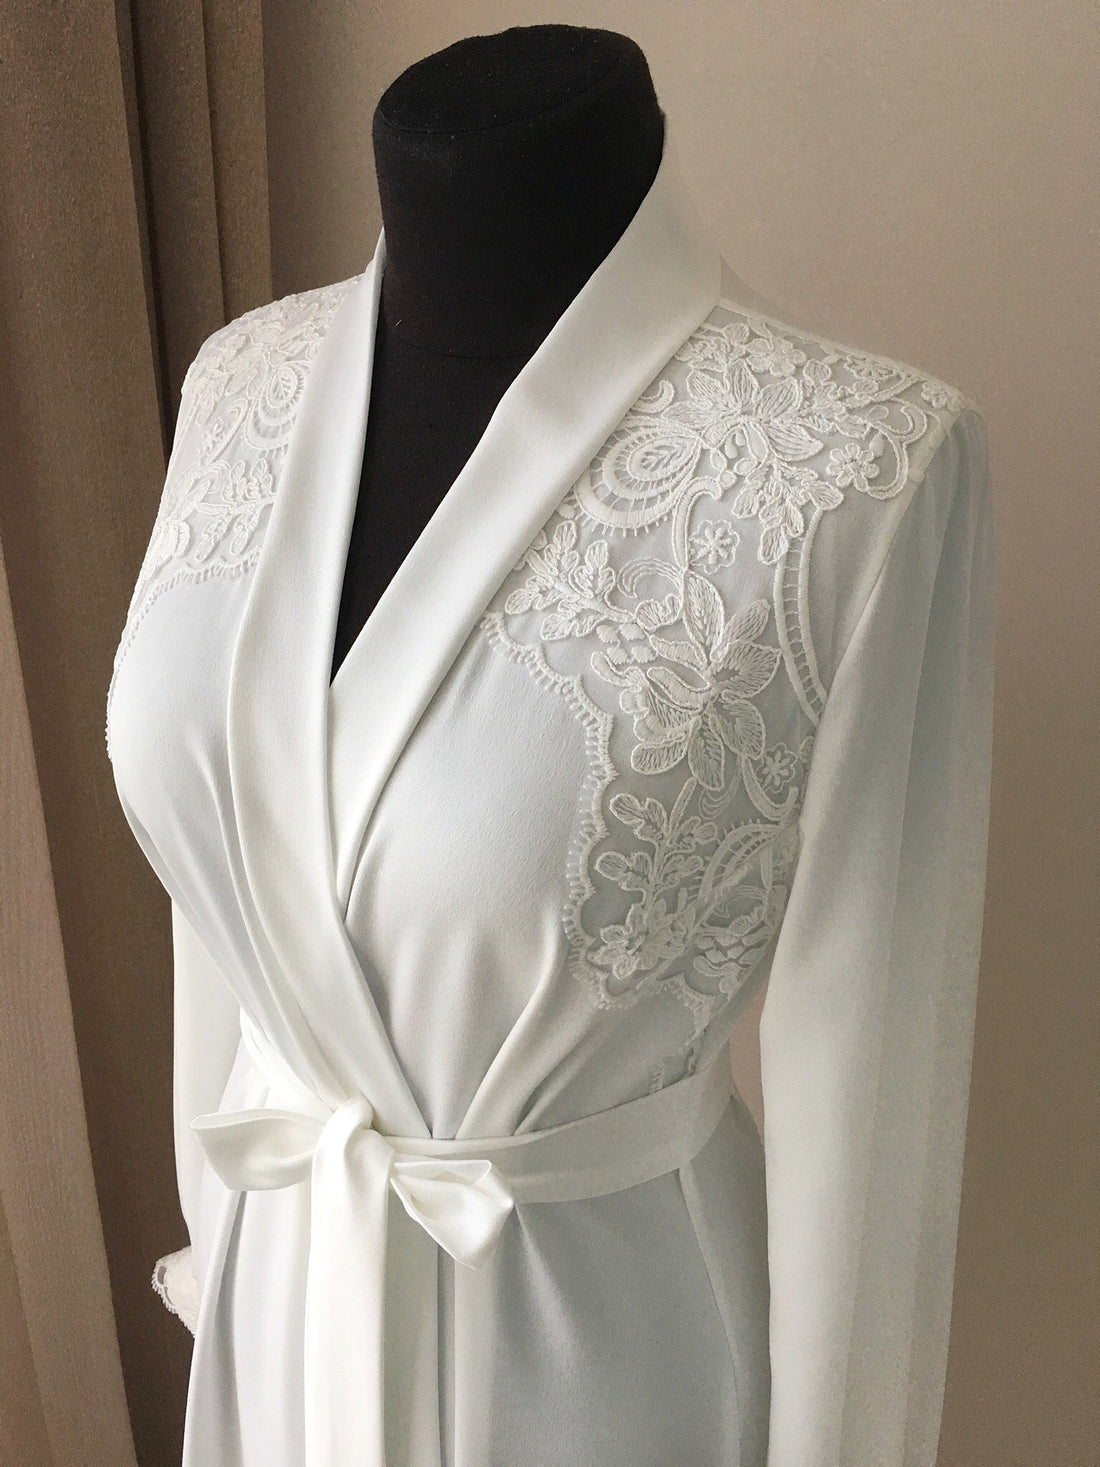 Long bridal robe lace